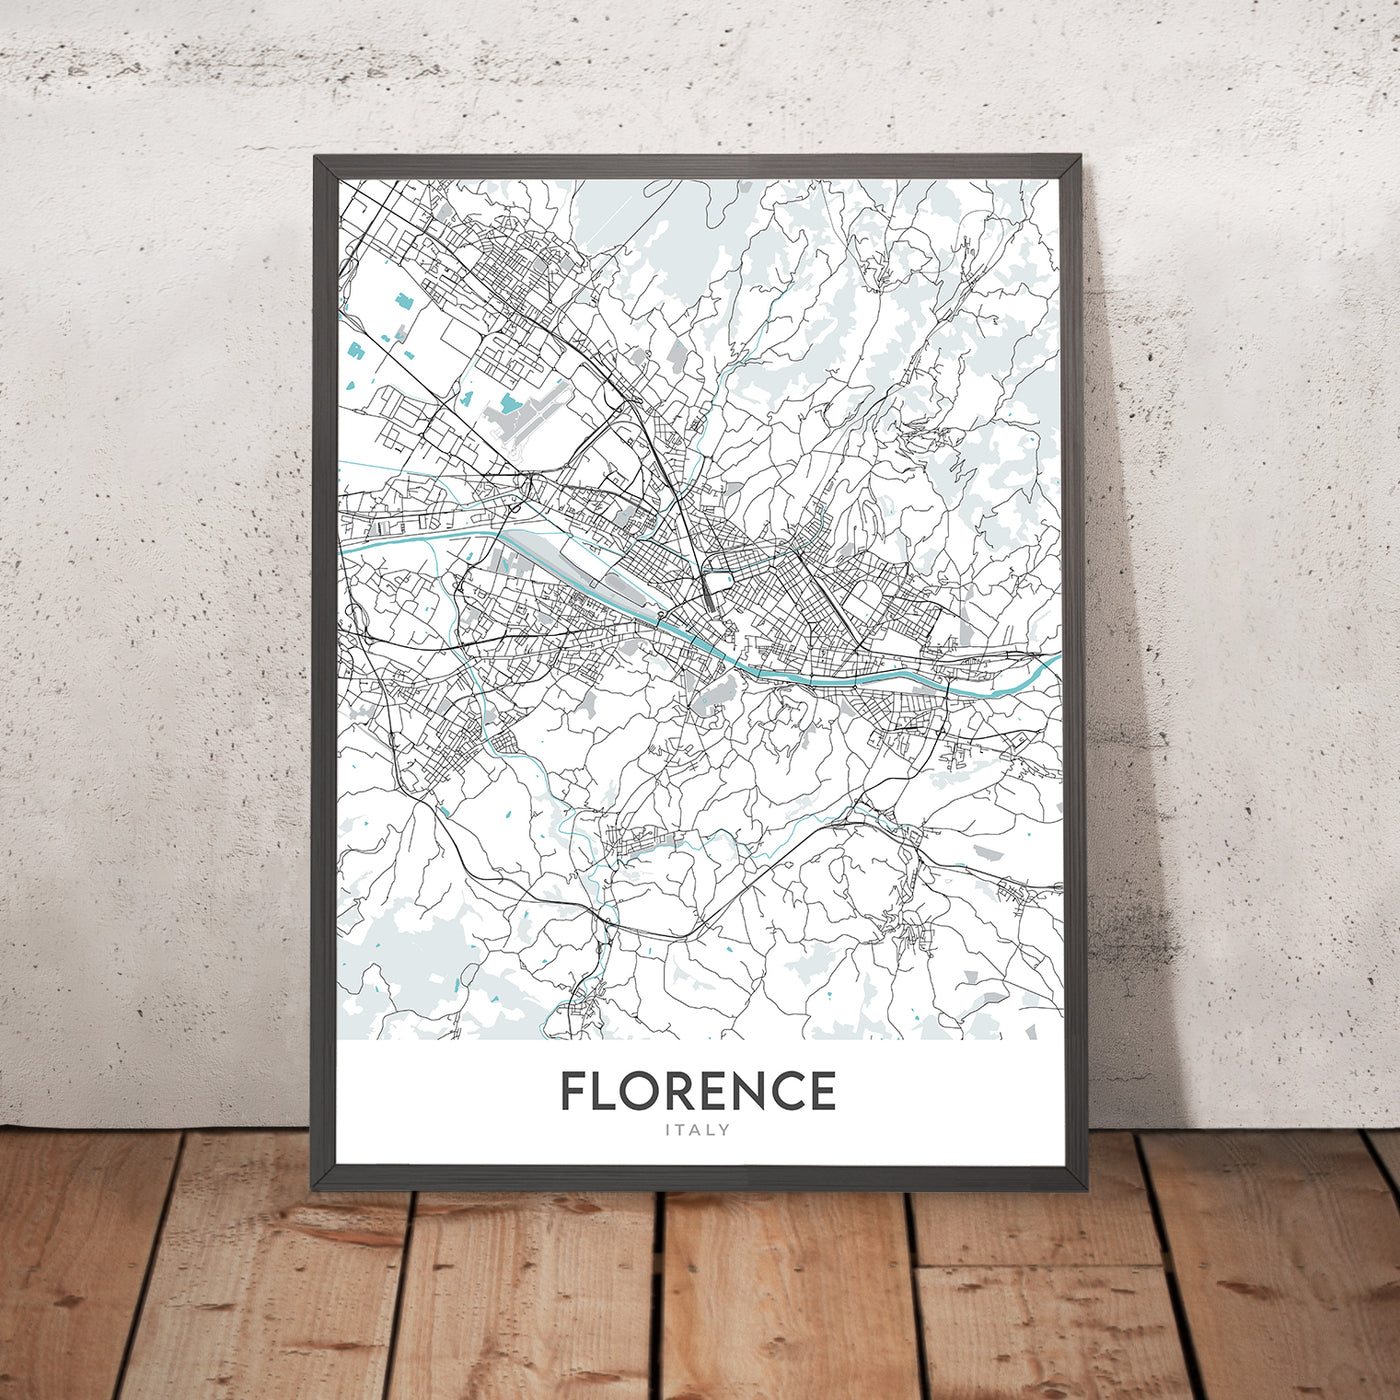 Mapa moderno de la ciudad de Florencia, Italia: Duomo, Uffizi, Ponte Vecchio, Santa Croce, Oltrarno